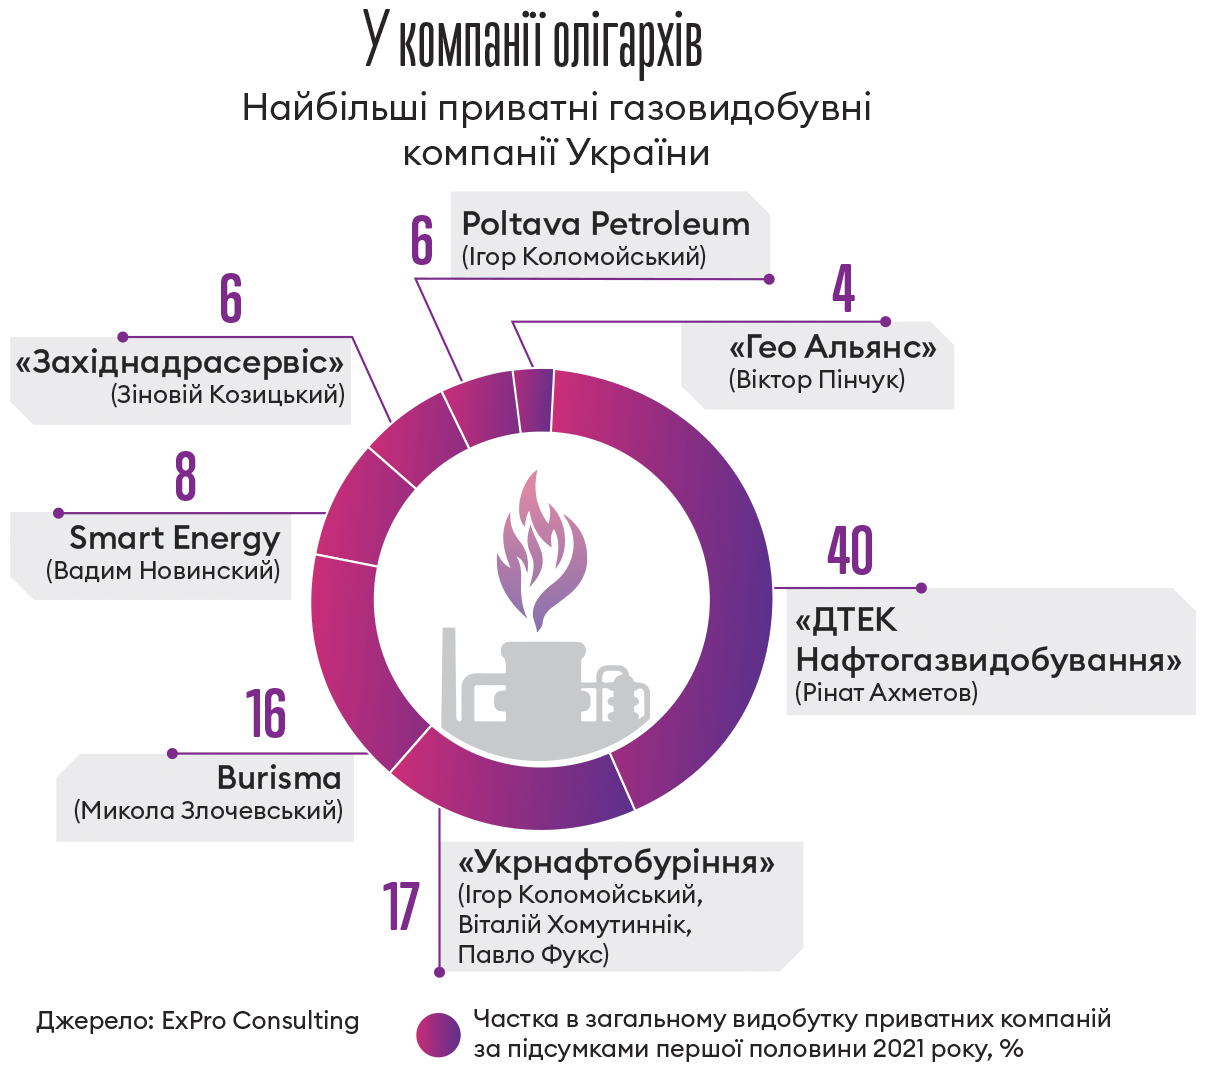 У Ахметова, Коломойского, Новинского и Пинчука есть миллиарды кубов газа. Он позволит украинцам не замерзнуть зимой. Почему государство не выкупает этот газ /Фото 1